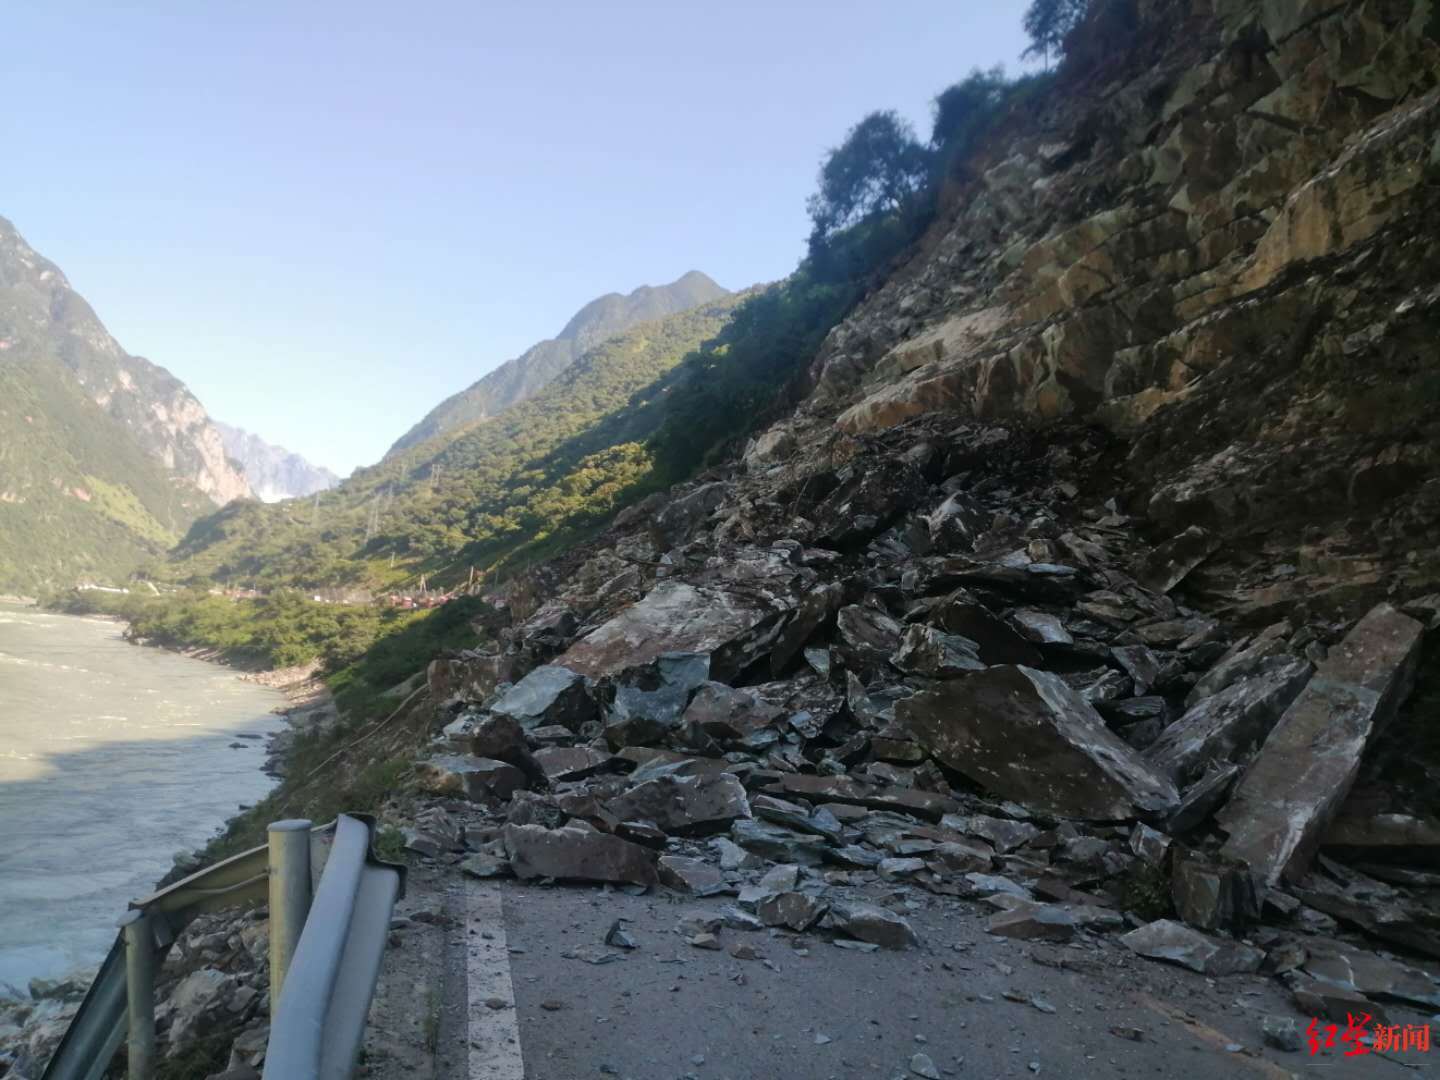 四川冕宁248国道山体岩石崩塌无人伤亡预计3至5日后恢复通行